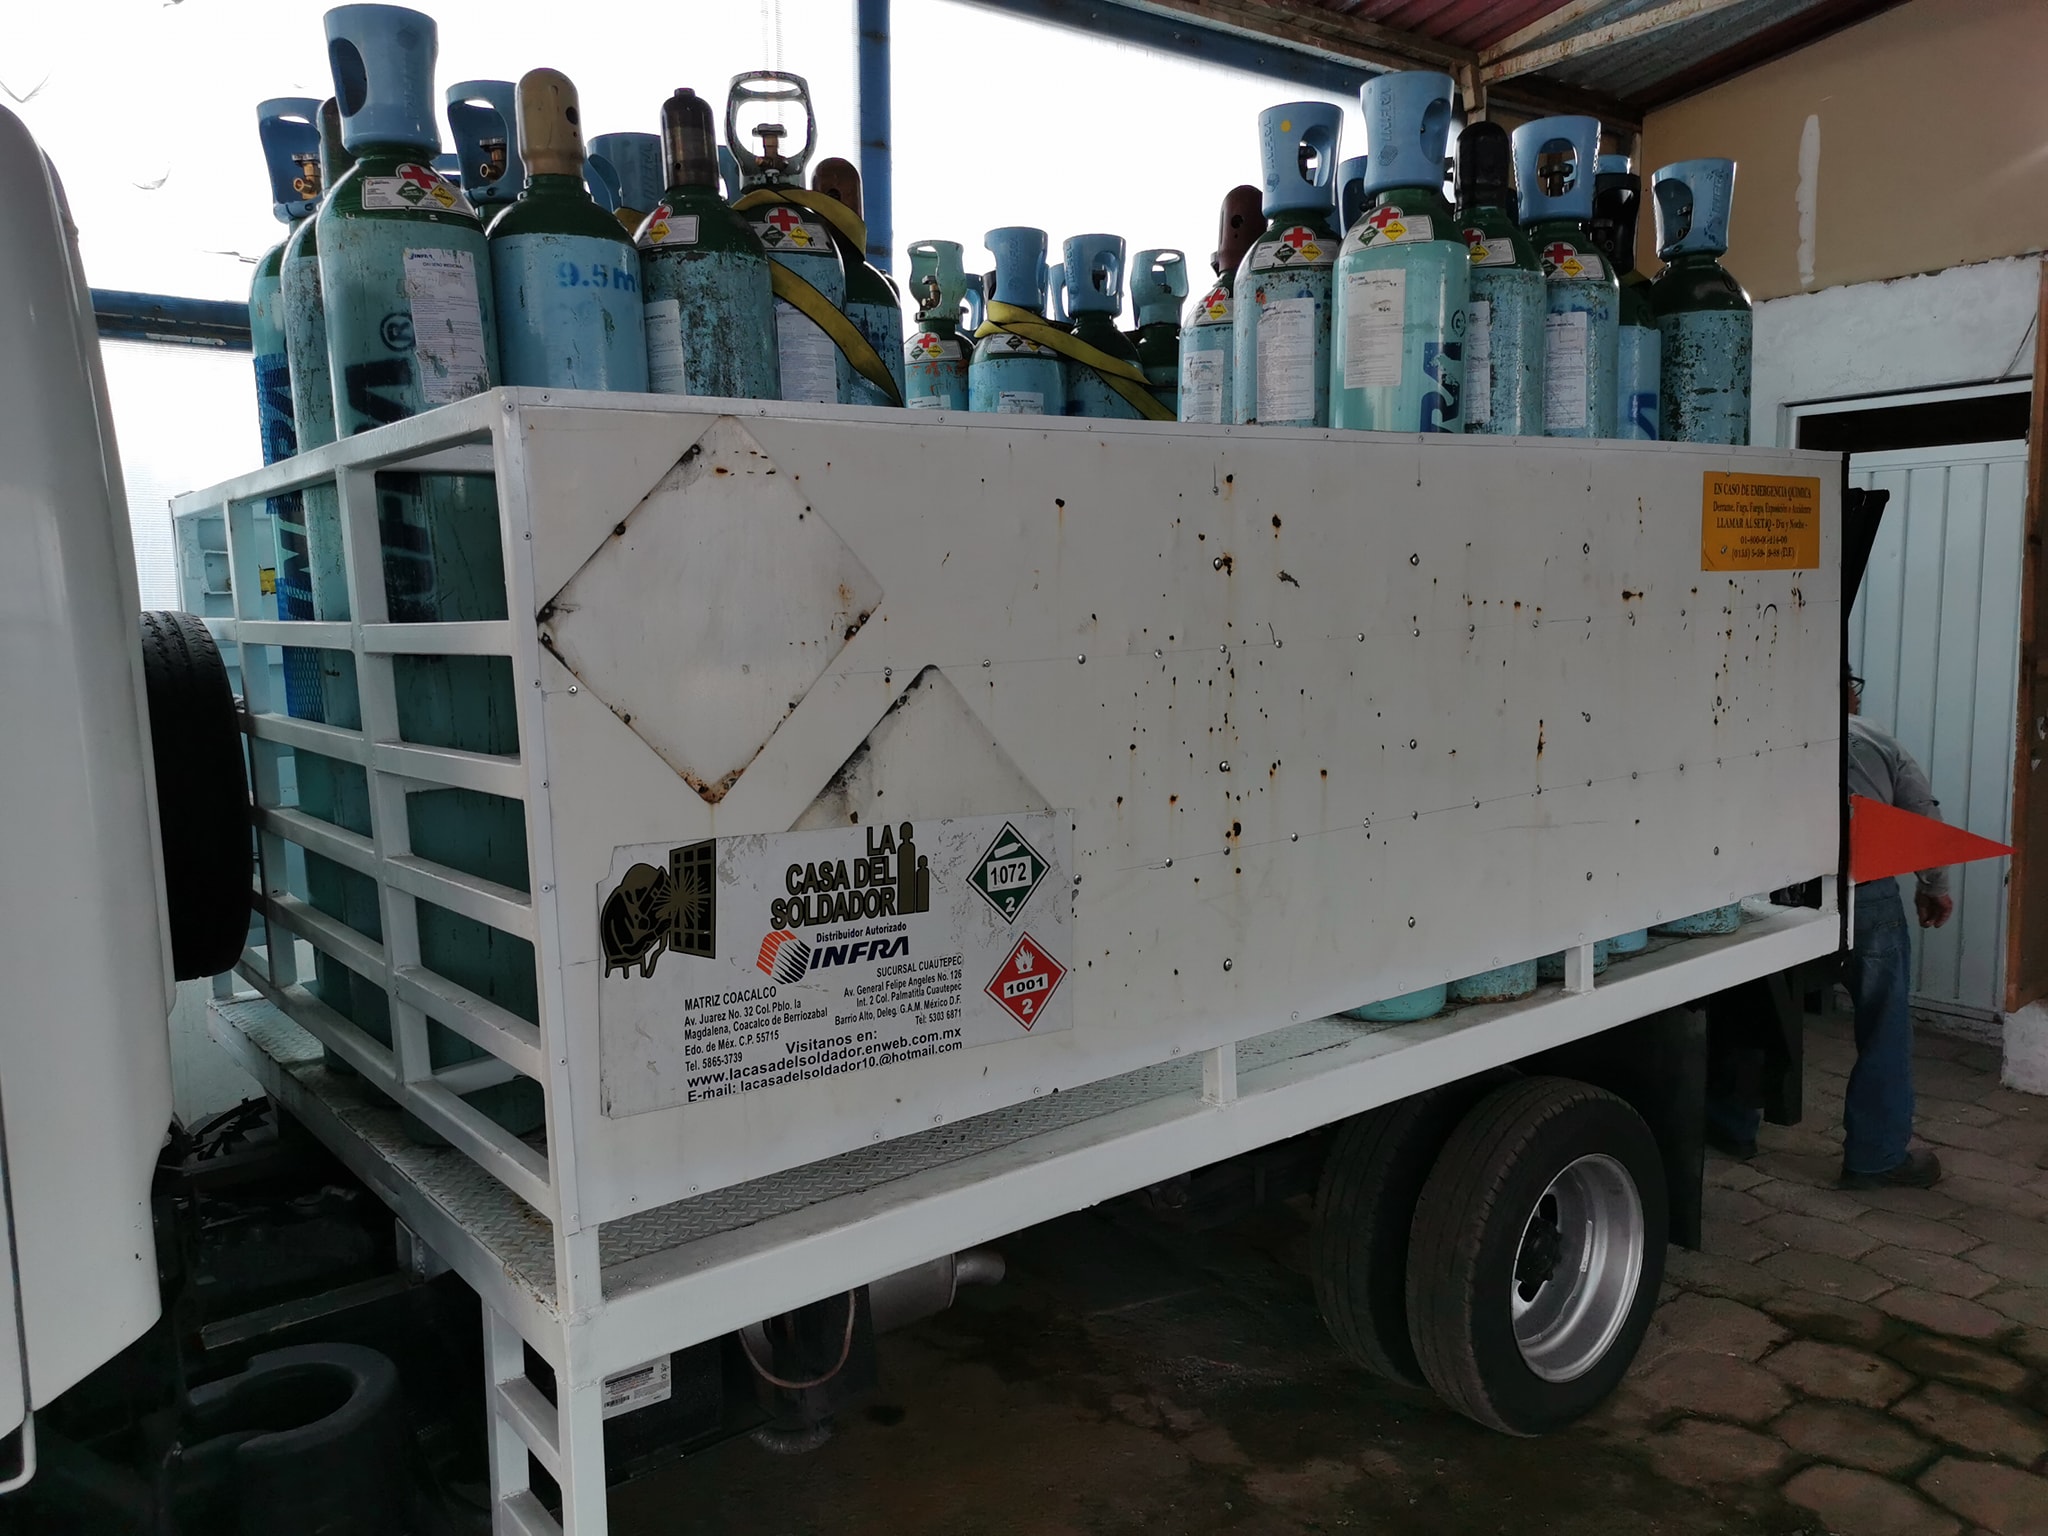 Un camión con tanques de oxígeno medicinal fue robado y recuperado este martes en el Estado de México (Foto: Facebook@Alberto Mondragon Torres)